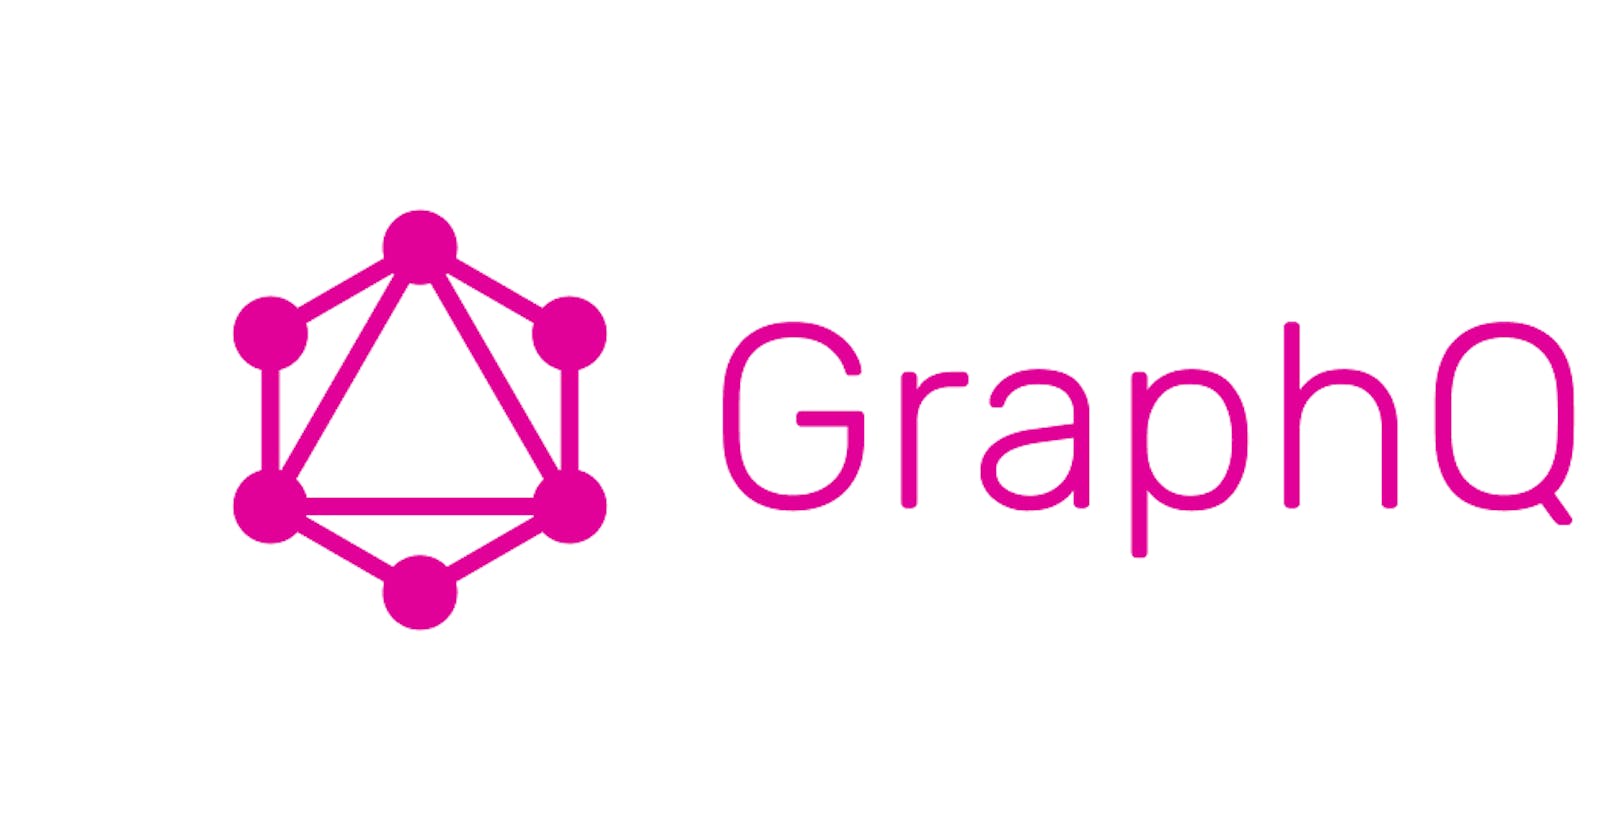 A Quick GraphQL Overview